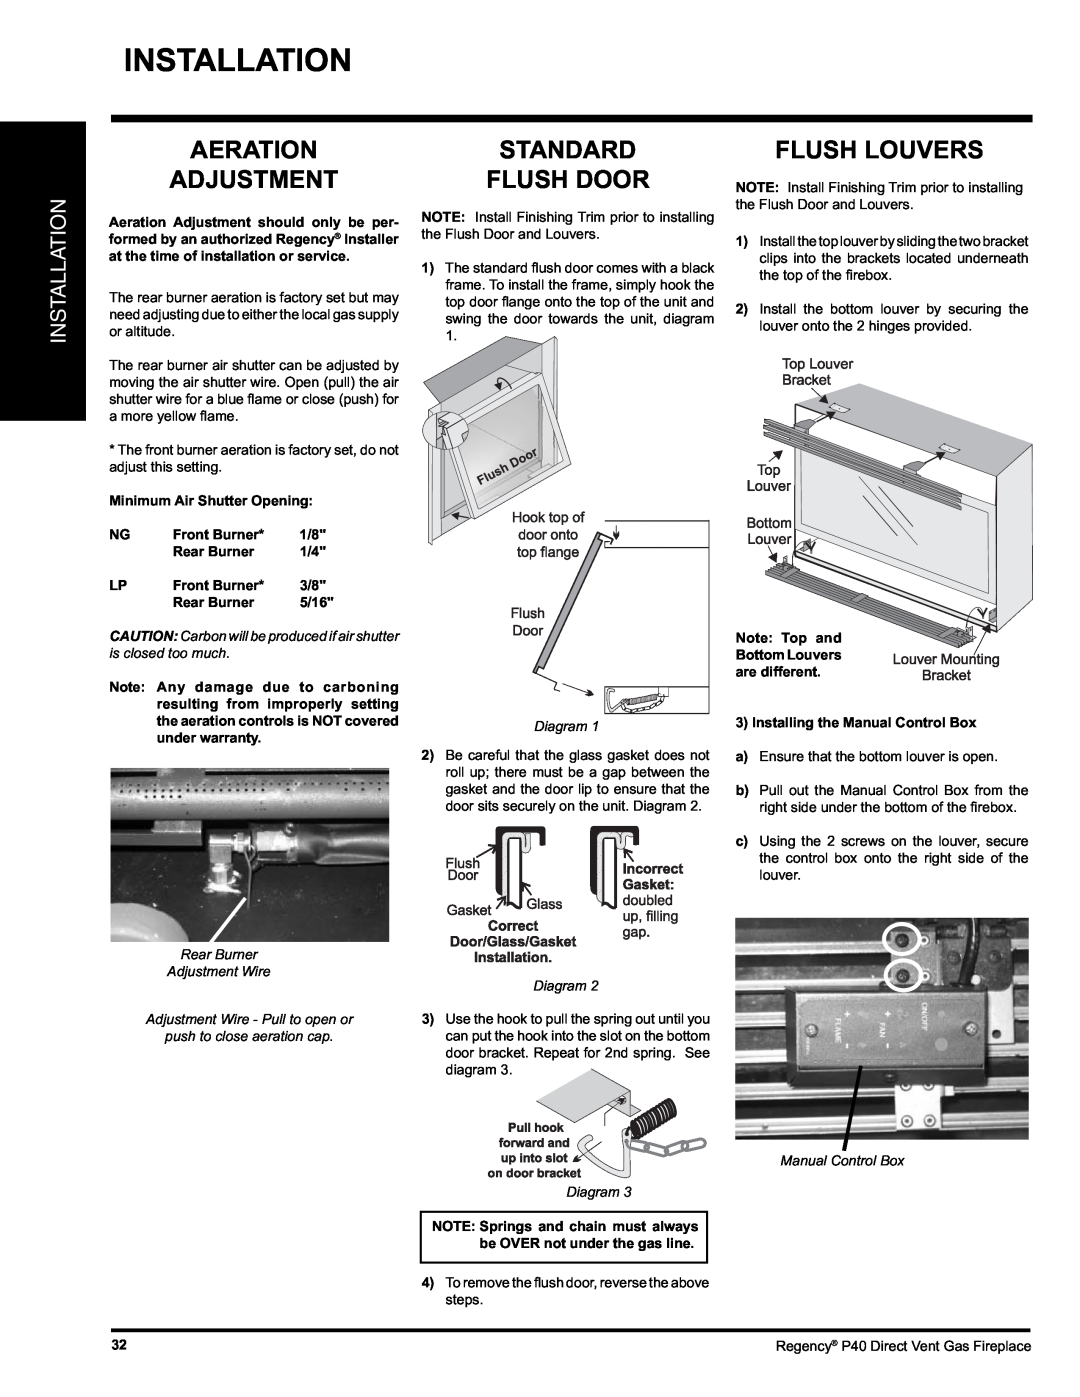 Regency P40 Aeration Adjustment, Standard Flush Door, Flush Louvers, Installation, Minimum Air Shutter Opening, 5/16 